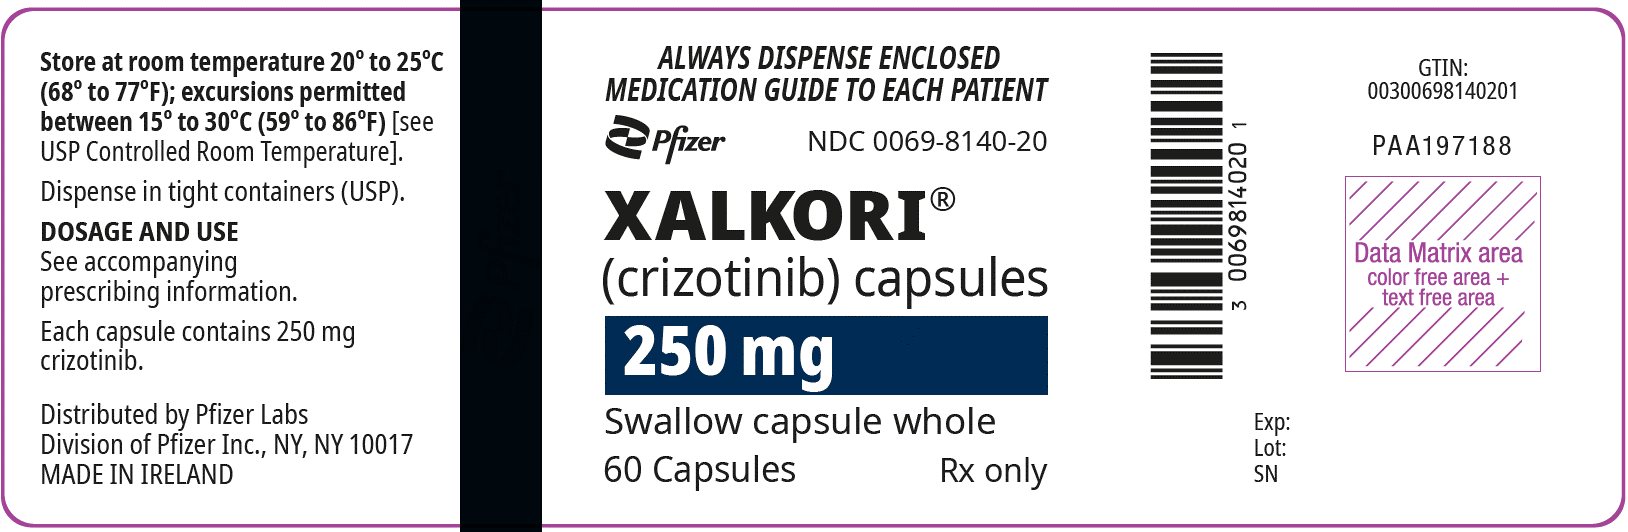 PRINCIPAL DISPLAY PANEL - 250 mg 캡슐 병 라벨